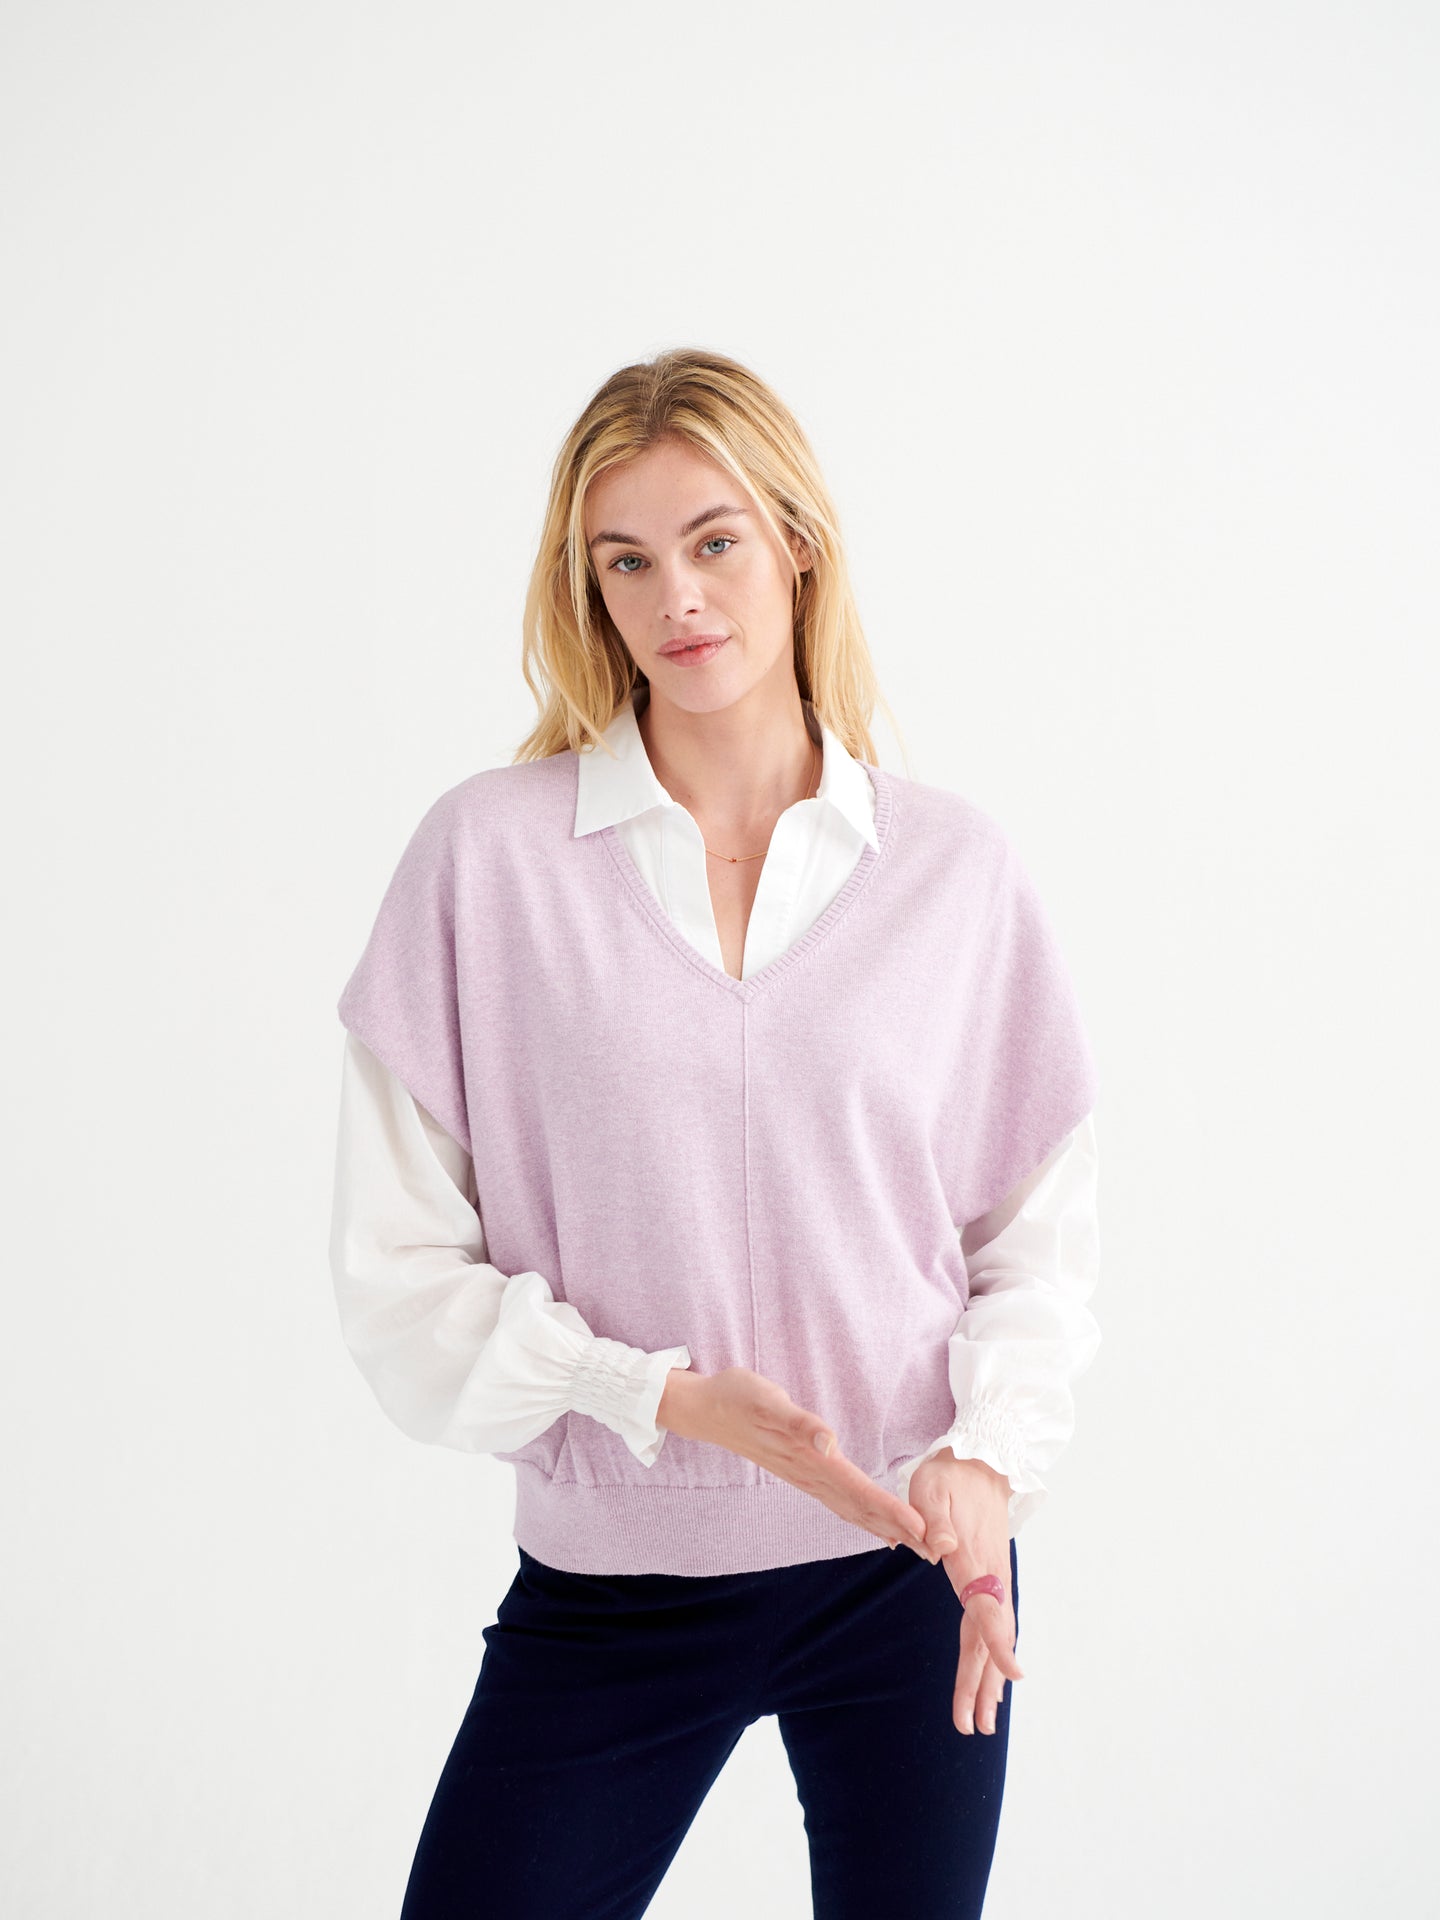 Chessie cotton cashmere blend sweater